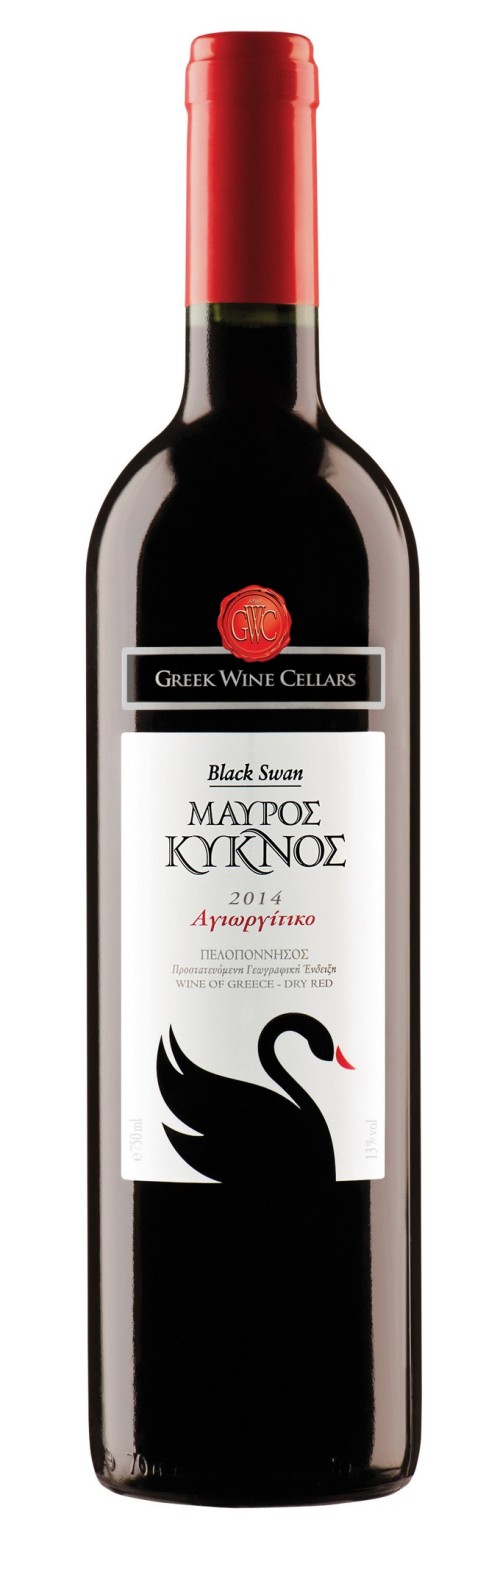 Οι Κυριακές του φθινοπώρου γίνονται καλύτερες με καλή παρέα και καλό κρασί: «Λευκός & Μαύρος Κύκνος»,  από την Ελληνικά Κελλάρια Οίνων!